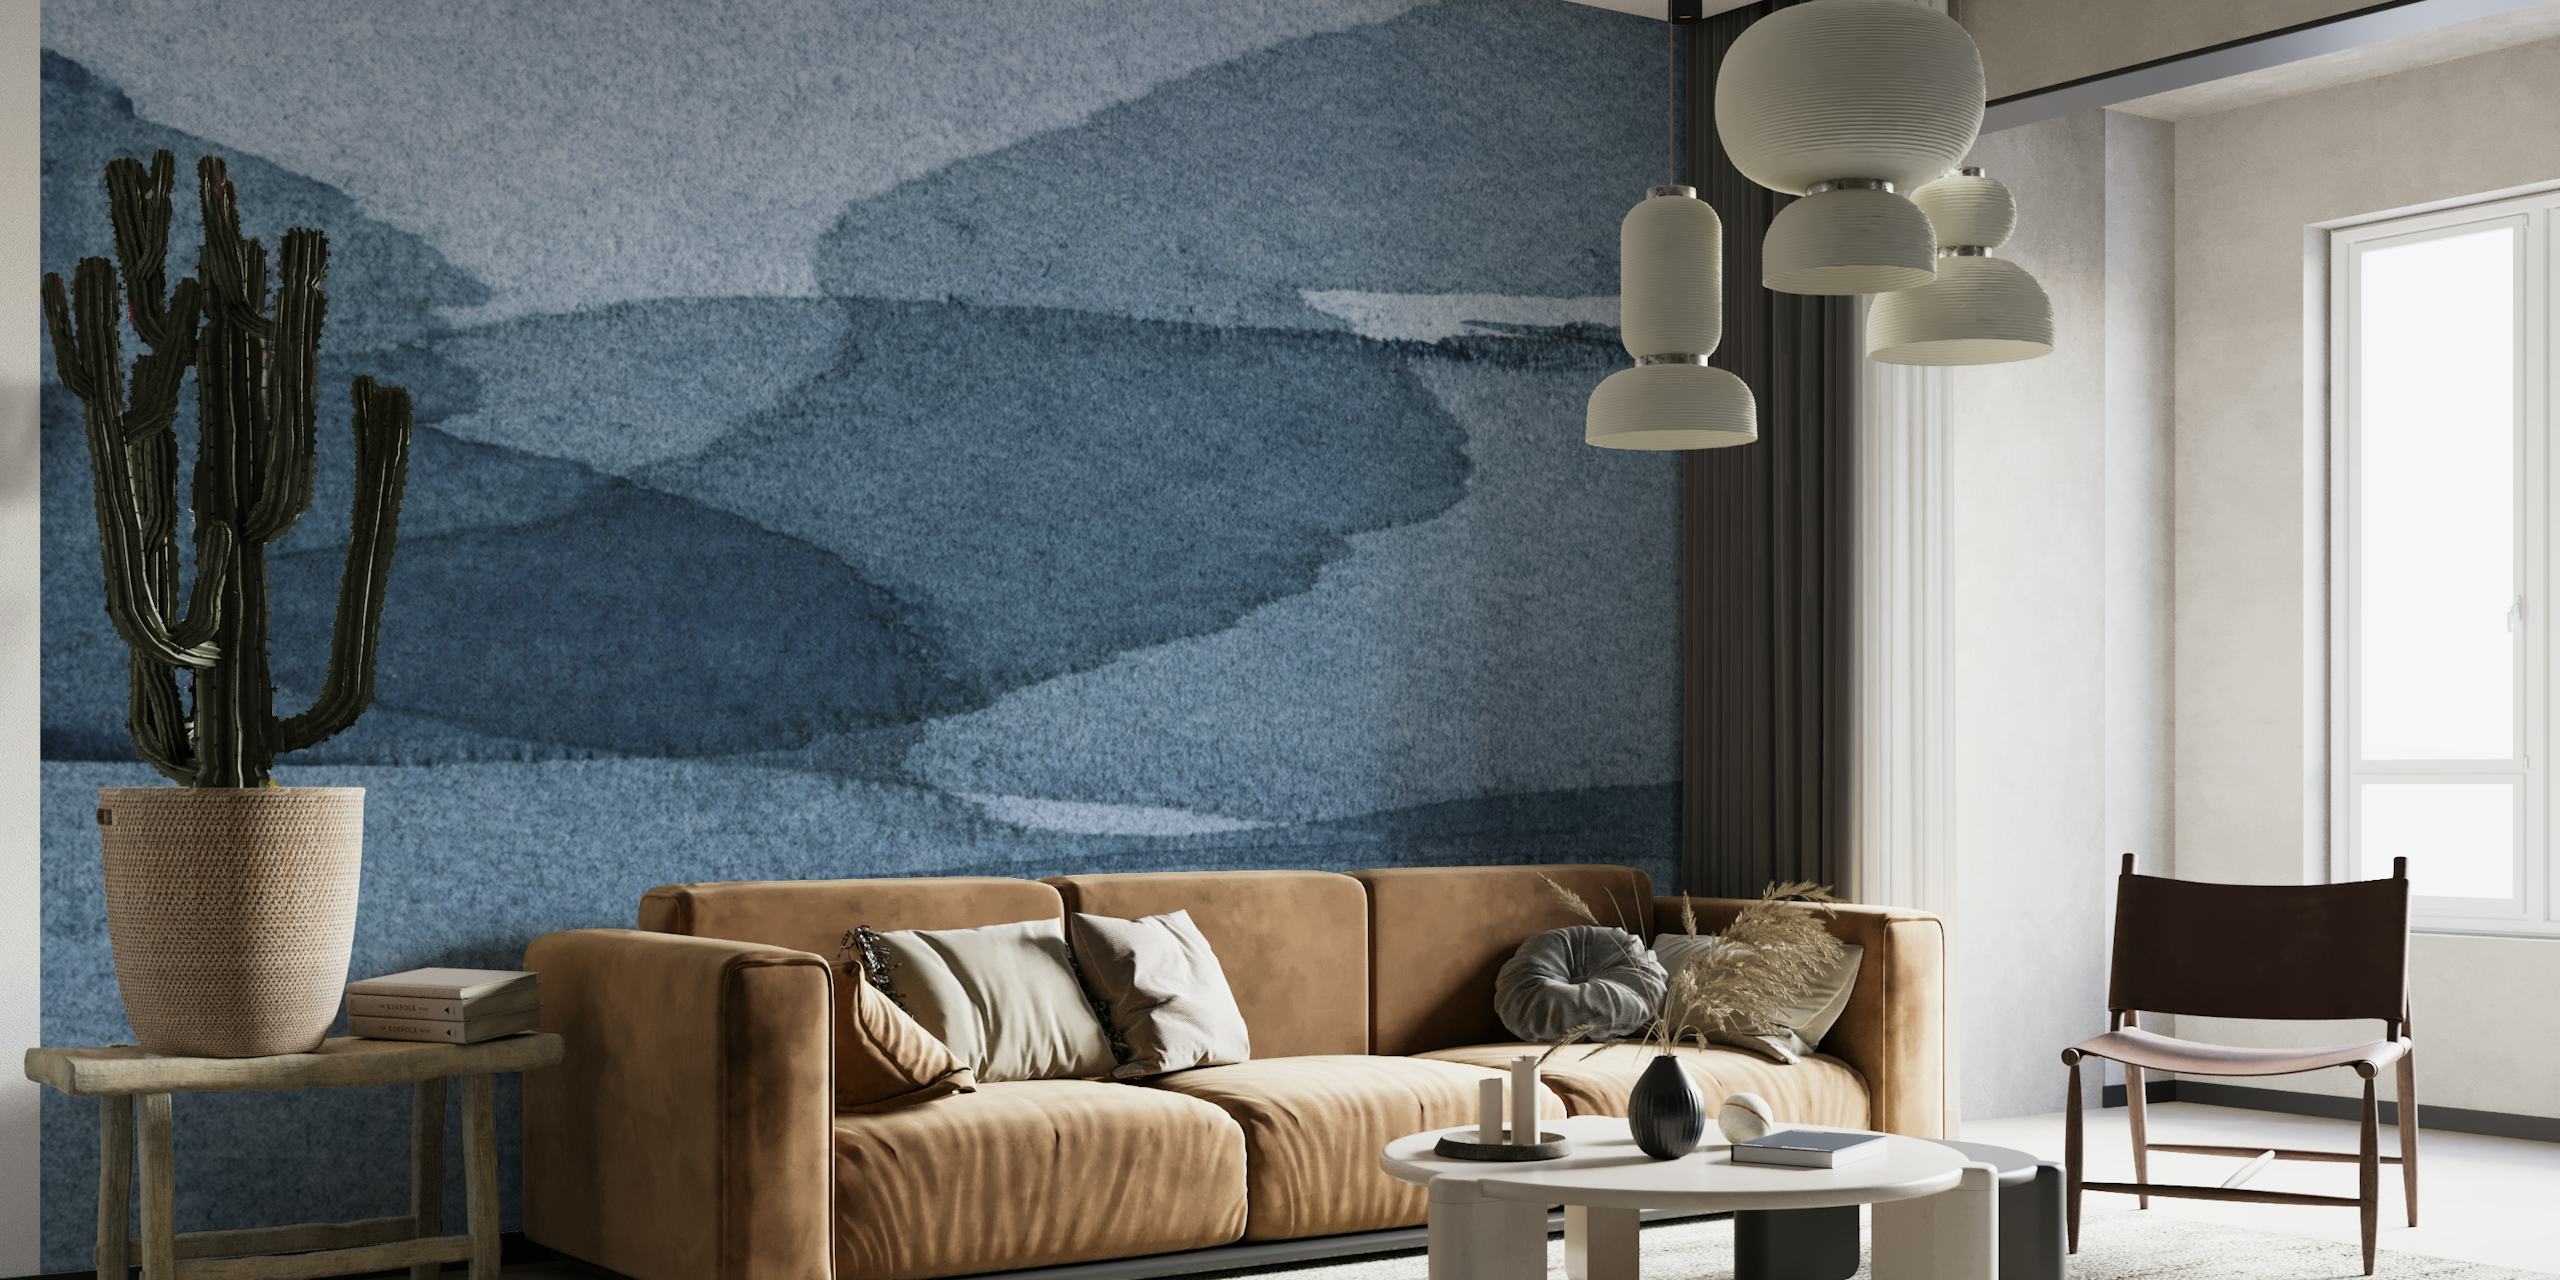 Abstraktes blaues Aquarell-Wandbild mit ruhigem, sich überlappenden Wellen-Design